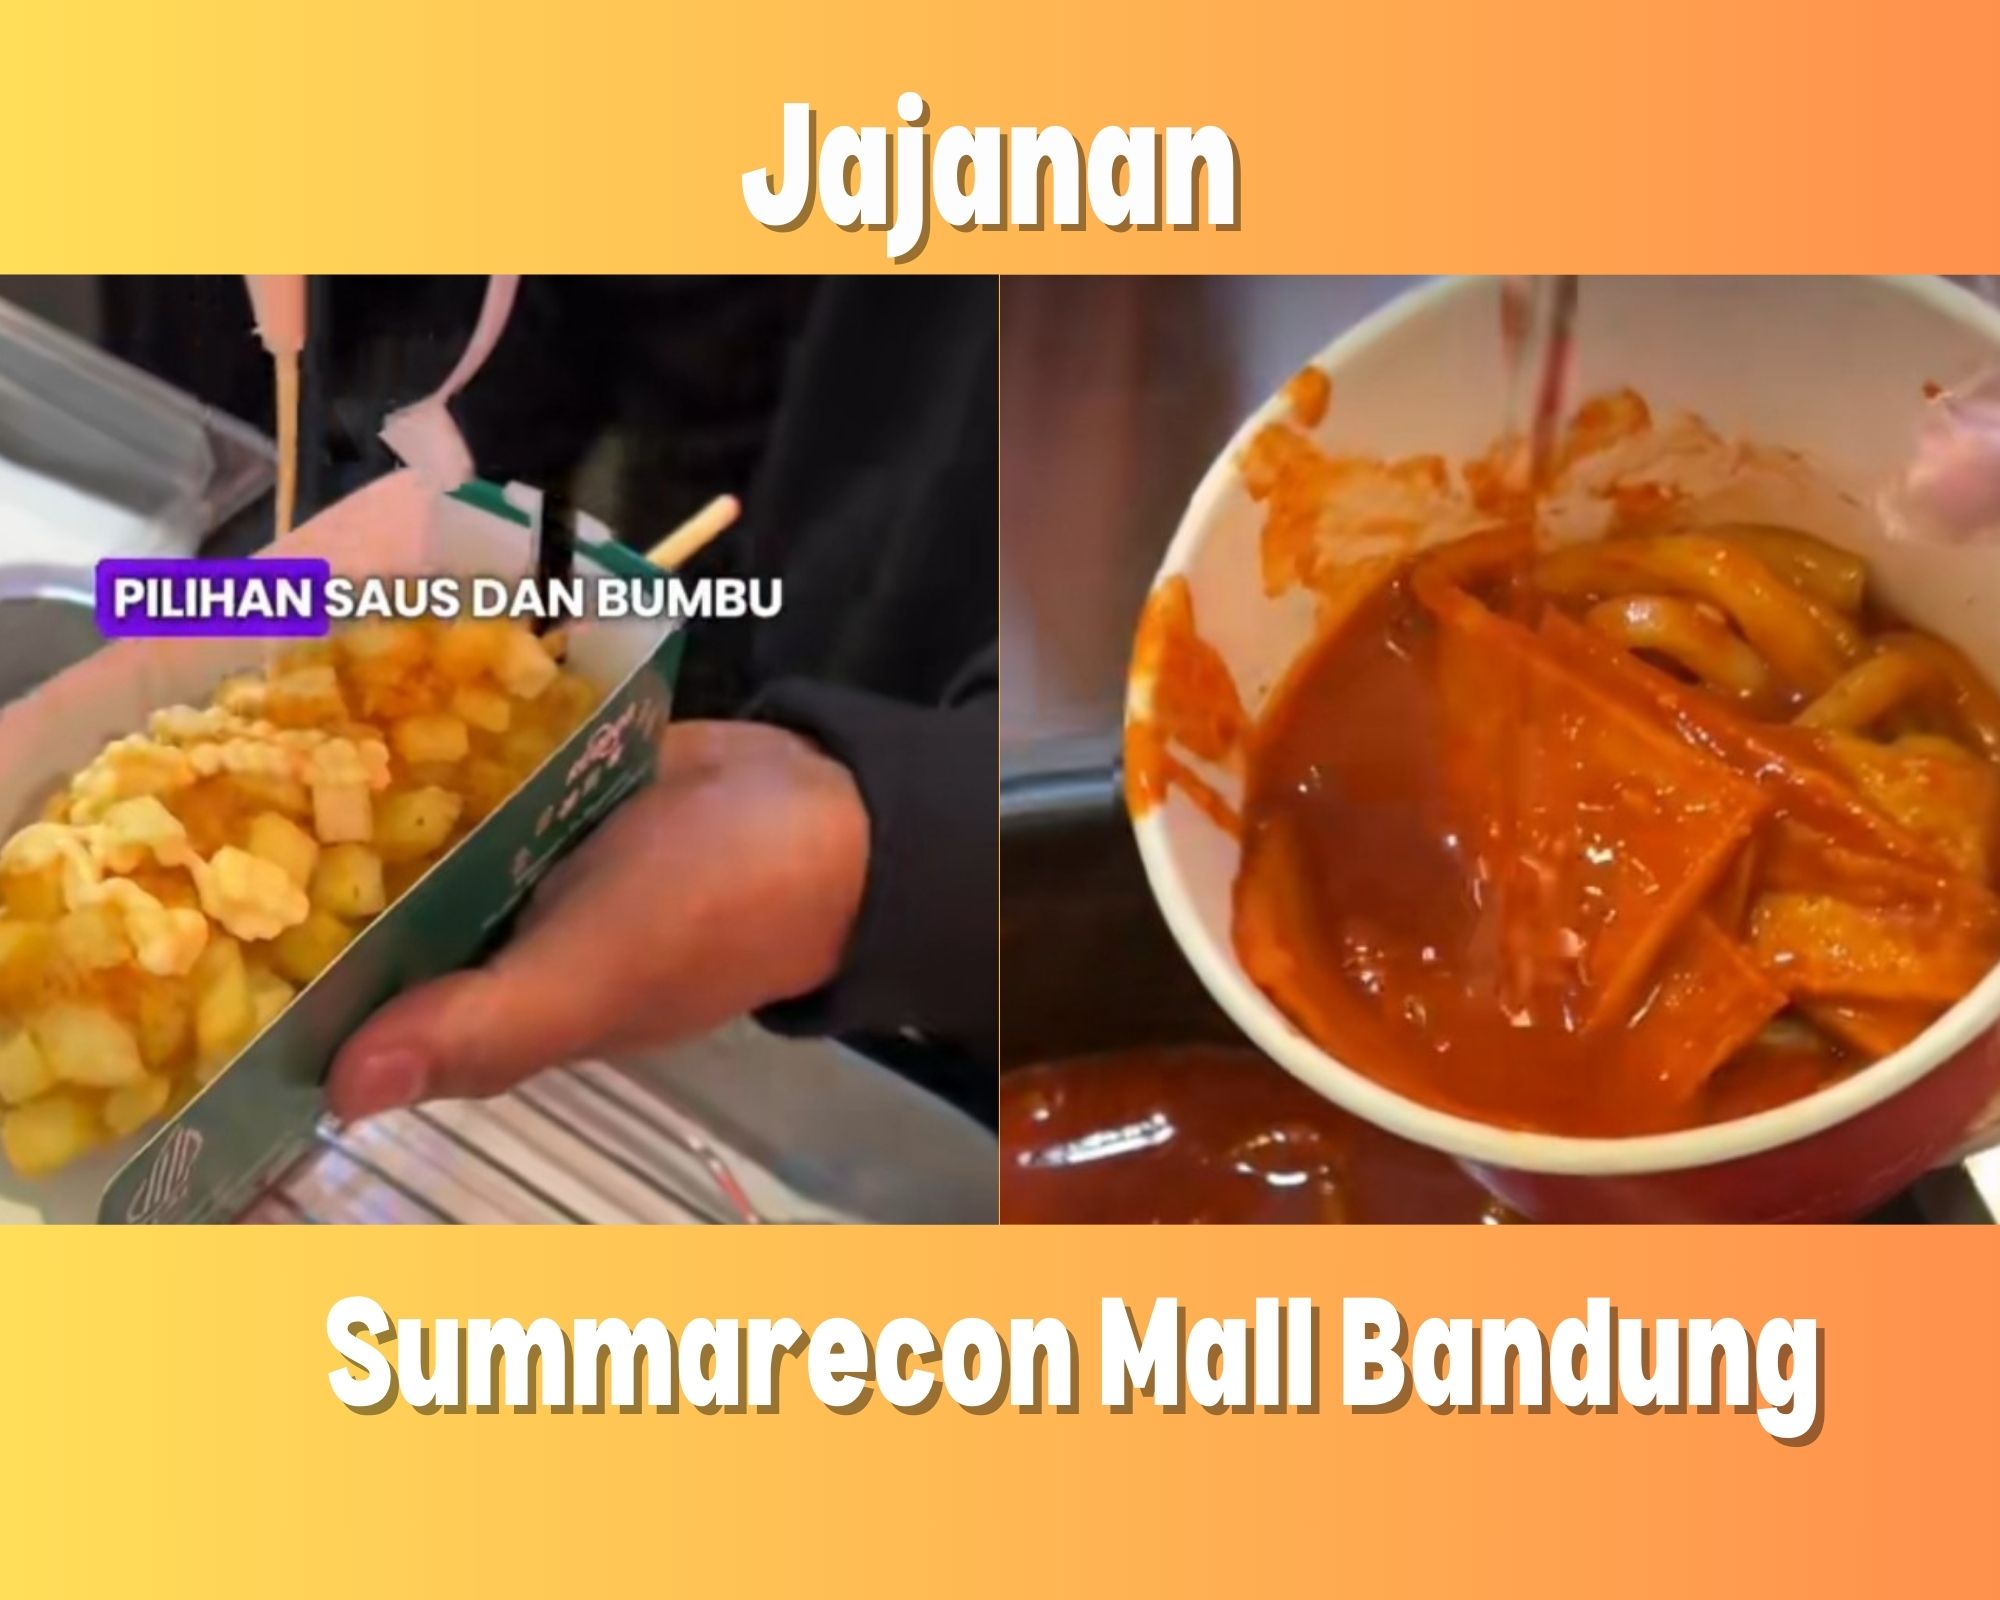 Kolase Rekomendasi Jajajan di Summarecon Mall Bandung, Reddog/ TikTok summareconmall.bandung